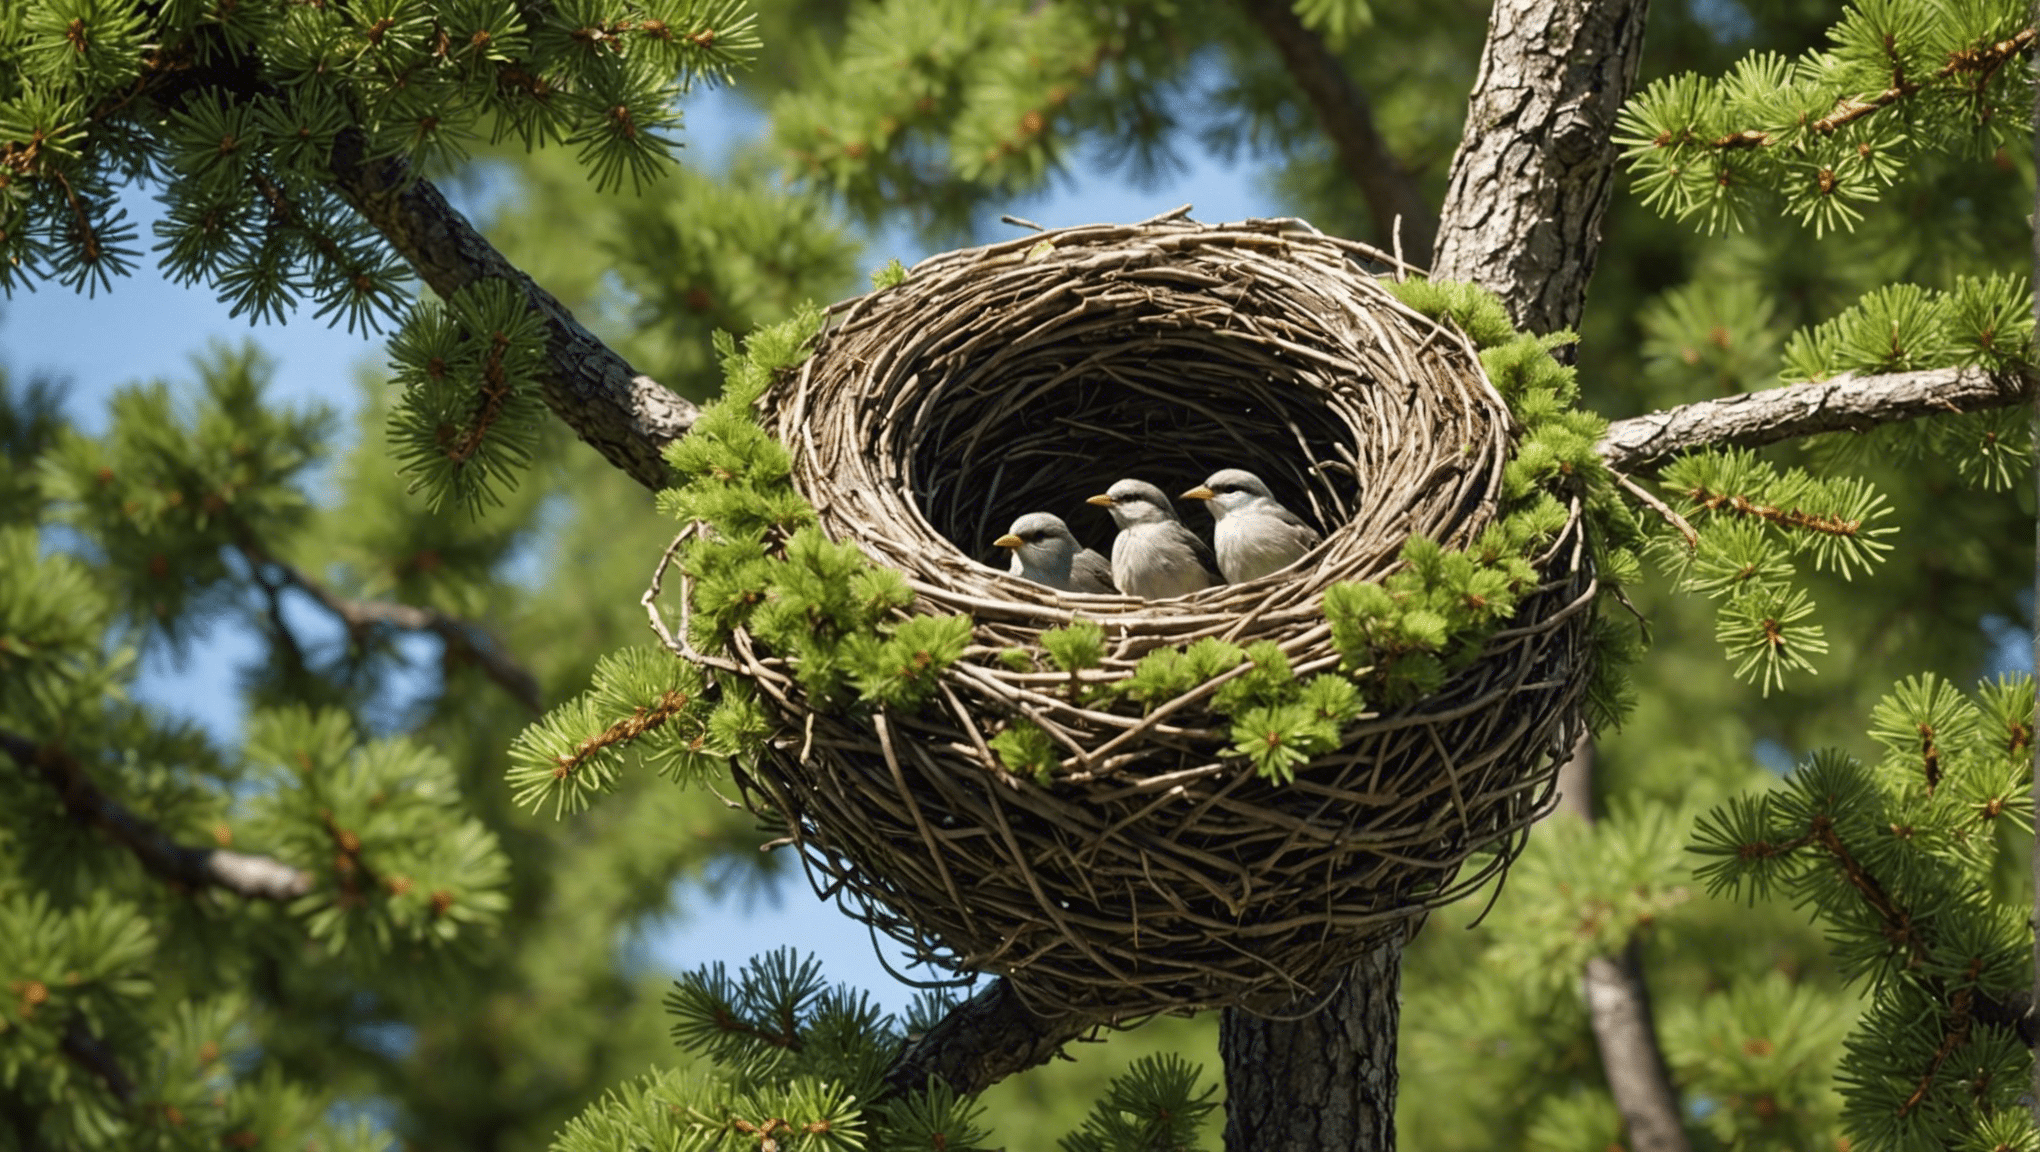 upptäck vad som gör fåglarnas häckningsgran så unik och tilltalande i den här informativa artikeln. lär dig om dess särdrag och egenskaper som skiljer den från andra träd.